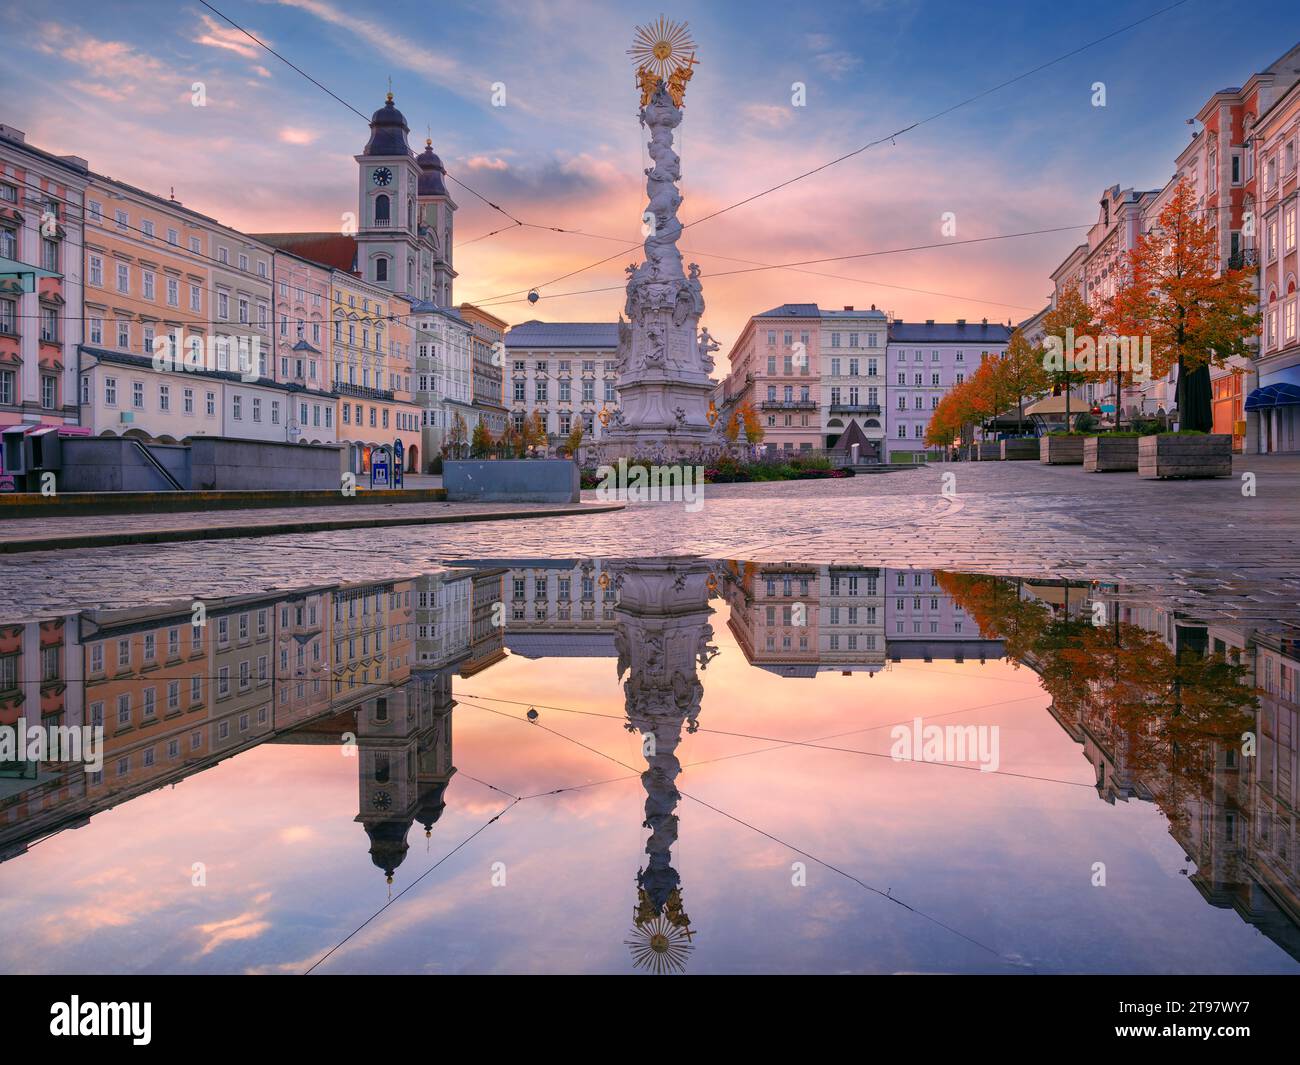 Linz, Autriche. Image de paysage urbain de la place principale de Linz, Autriche avec reflet de la ville Skyline au beau lever du soleil. Banque D'Images